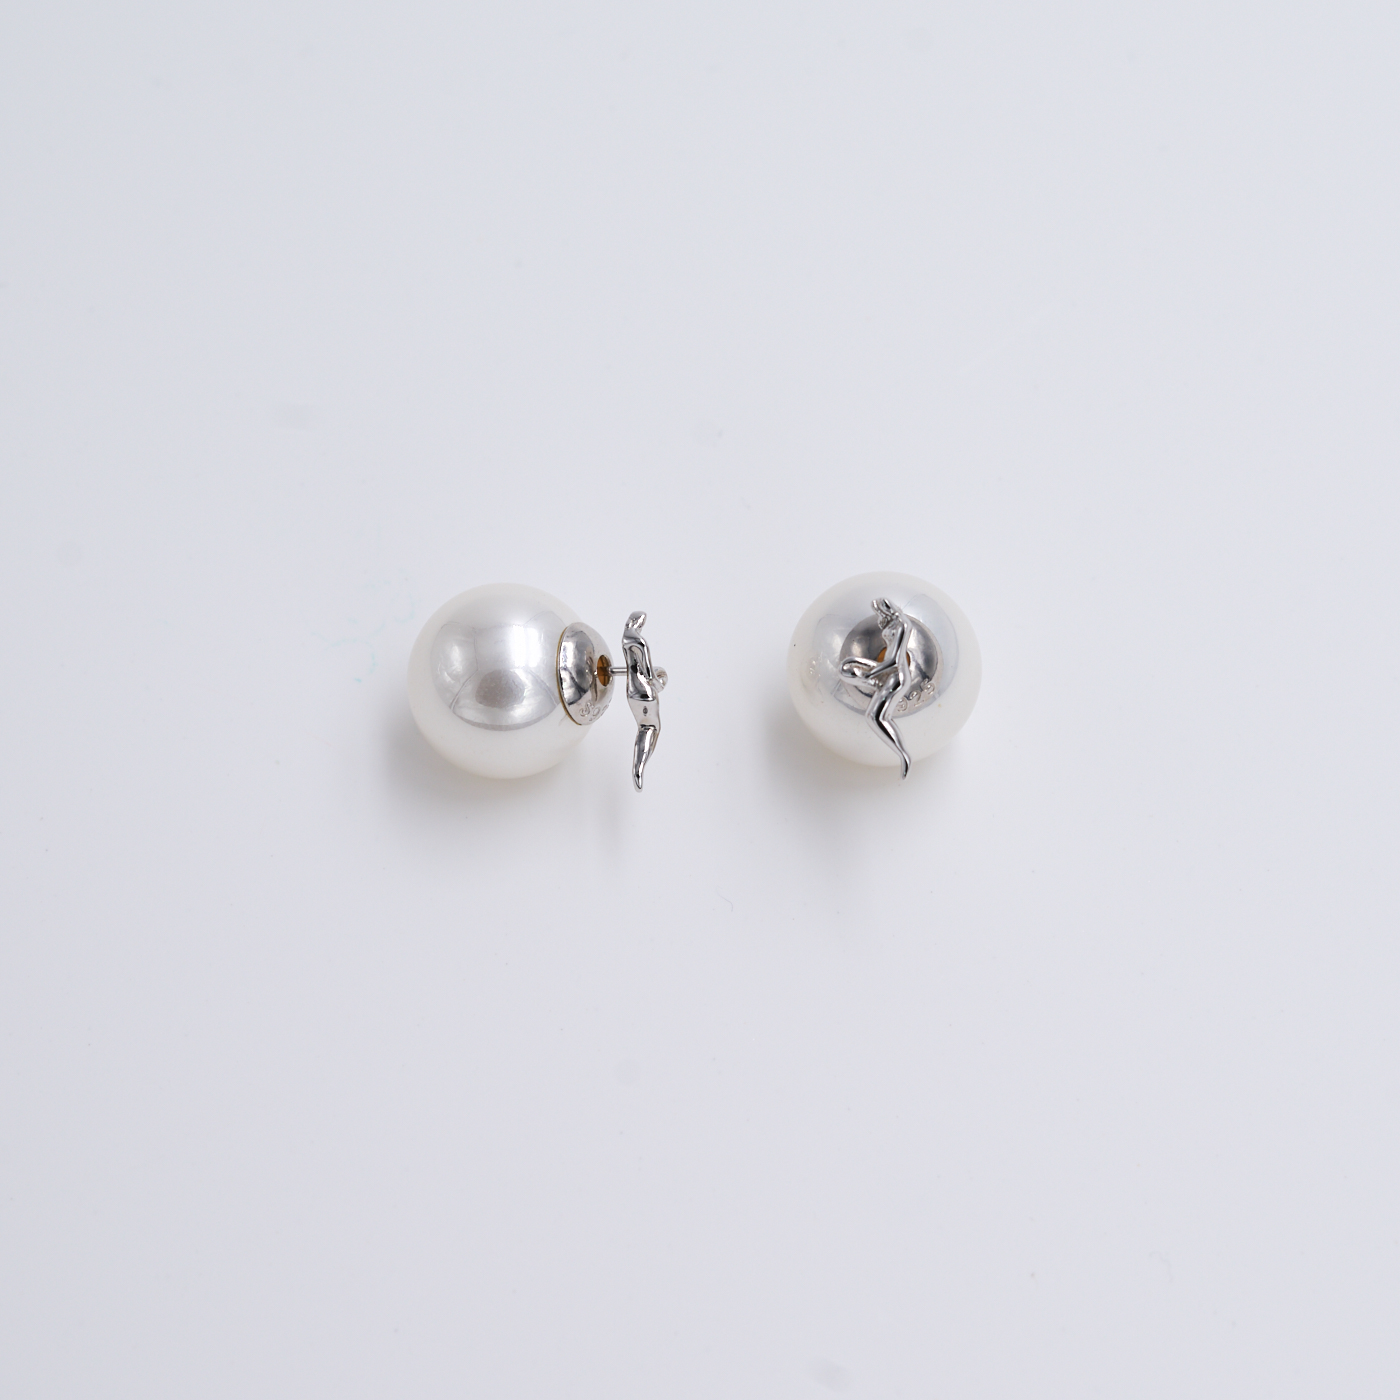 常玉藝術珠寶系列-美姿珍珠耳環